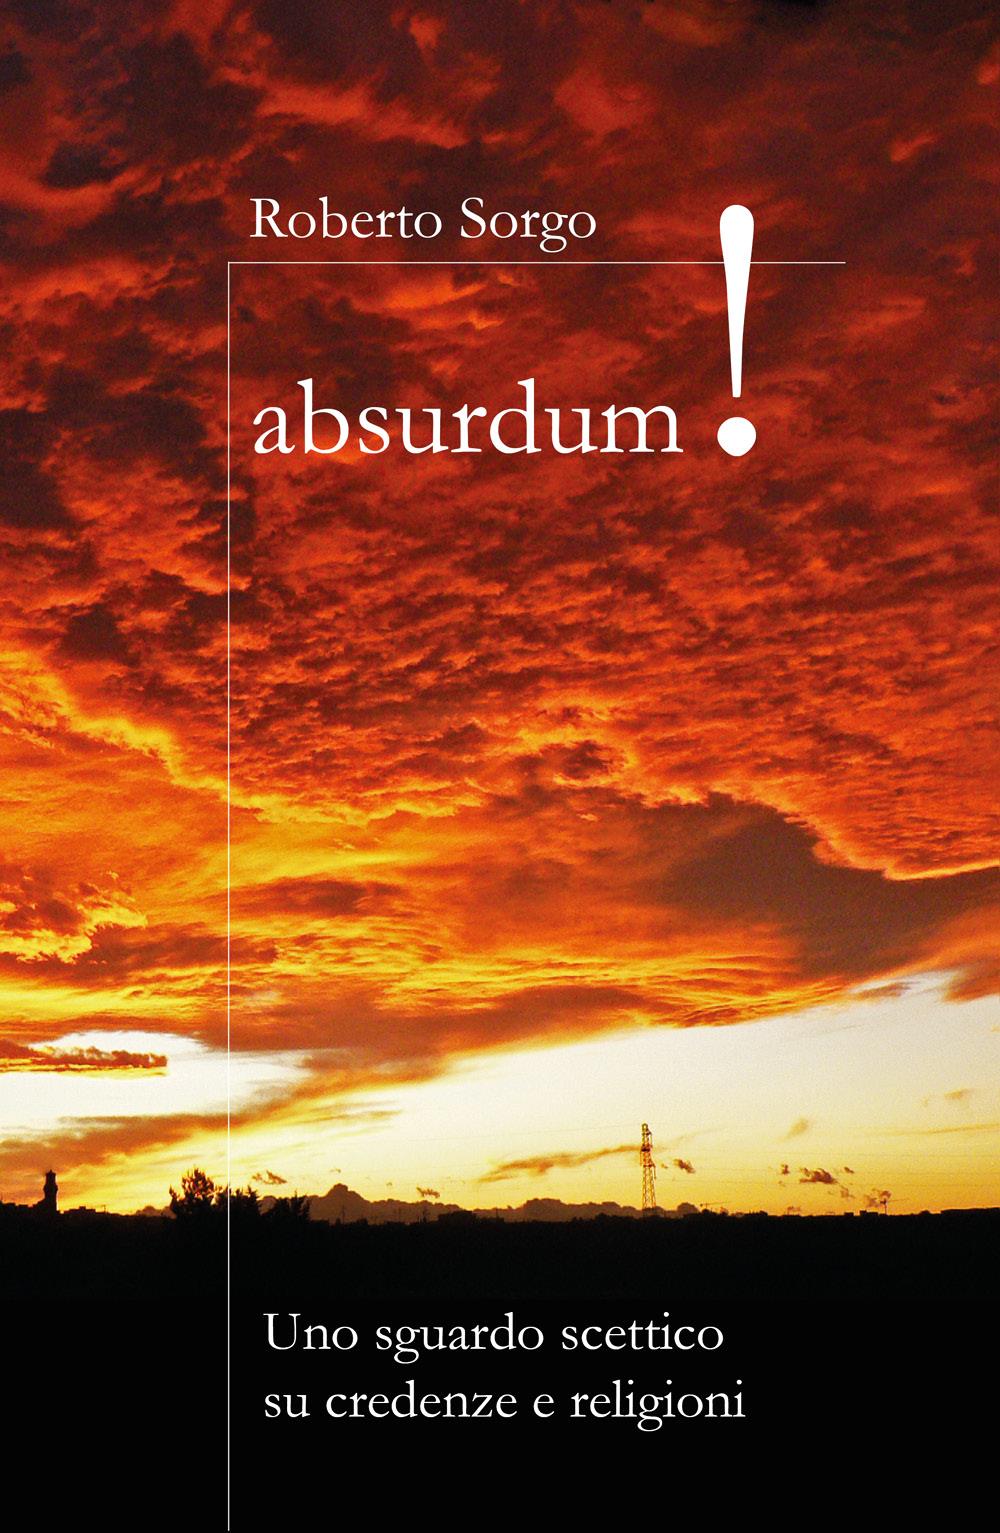 Absurdum - Uno sguardo scettico su credenze e religioni